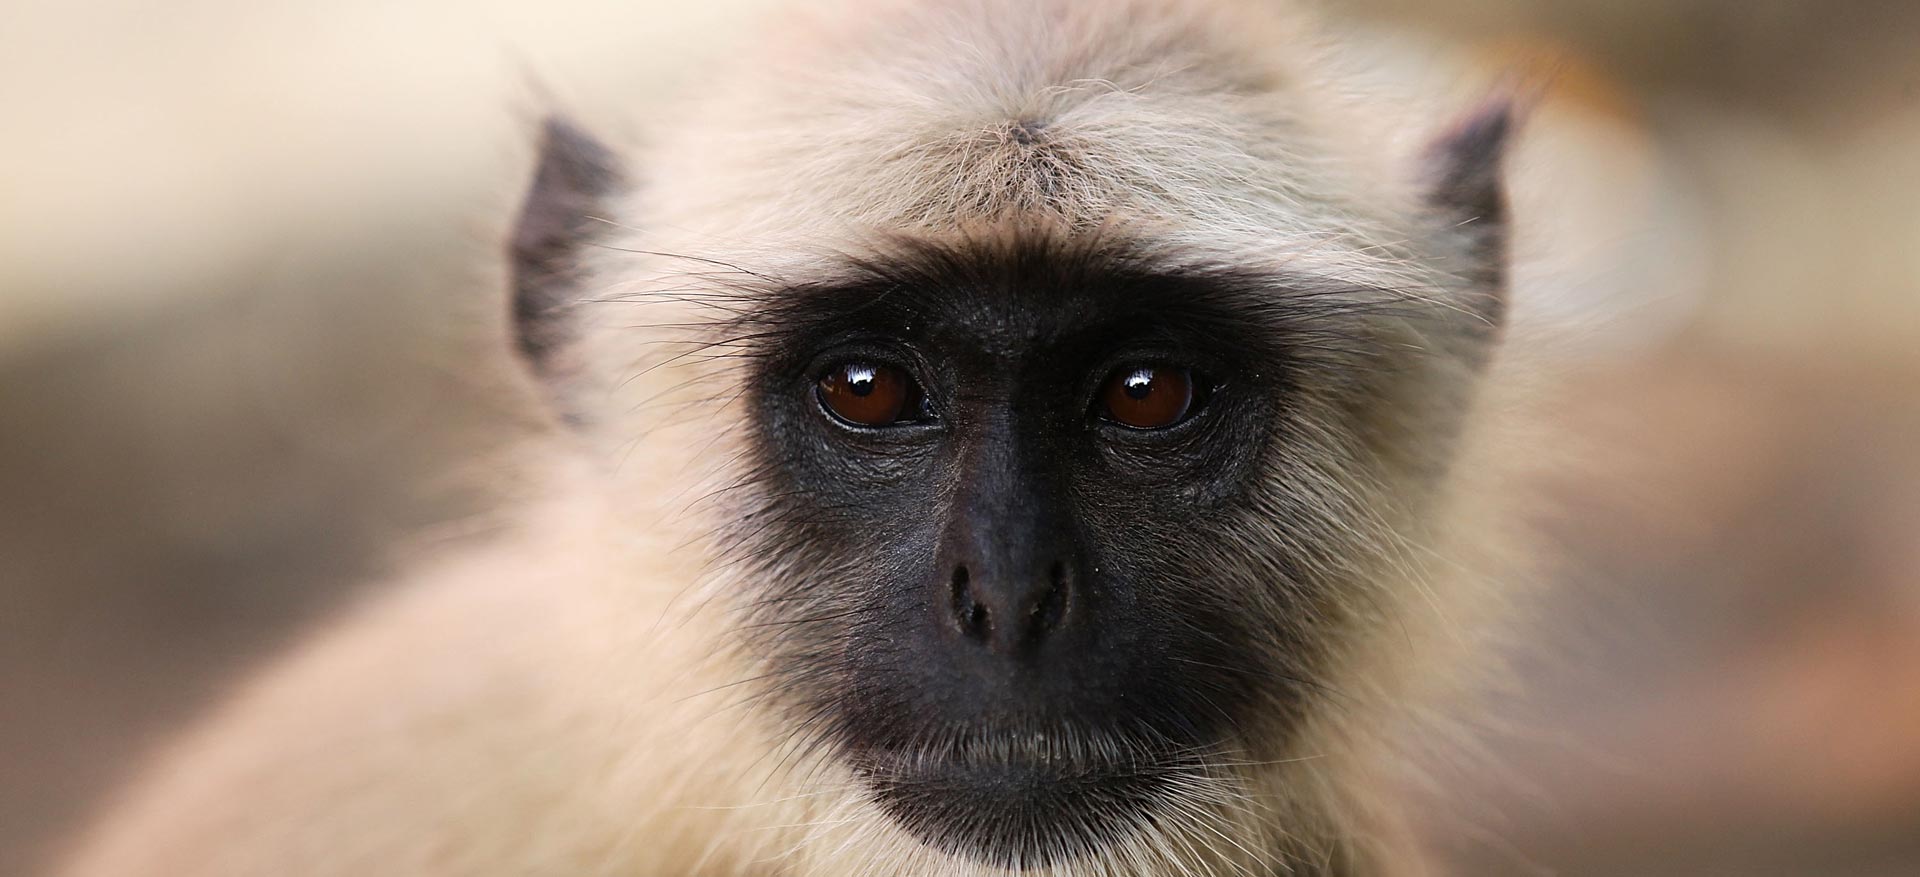 Indija: majmun uzeo torbicu pa razbacao novac